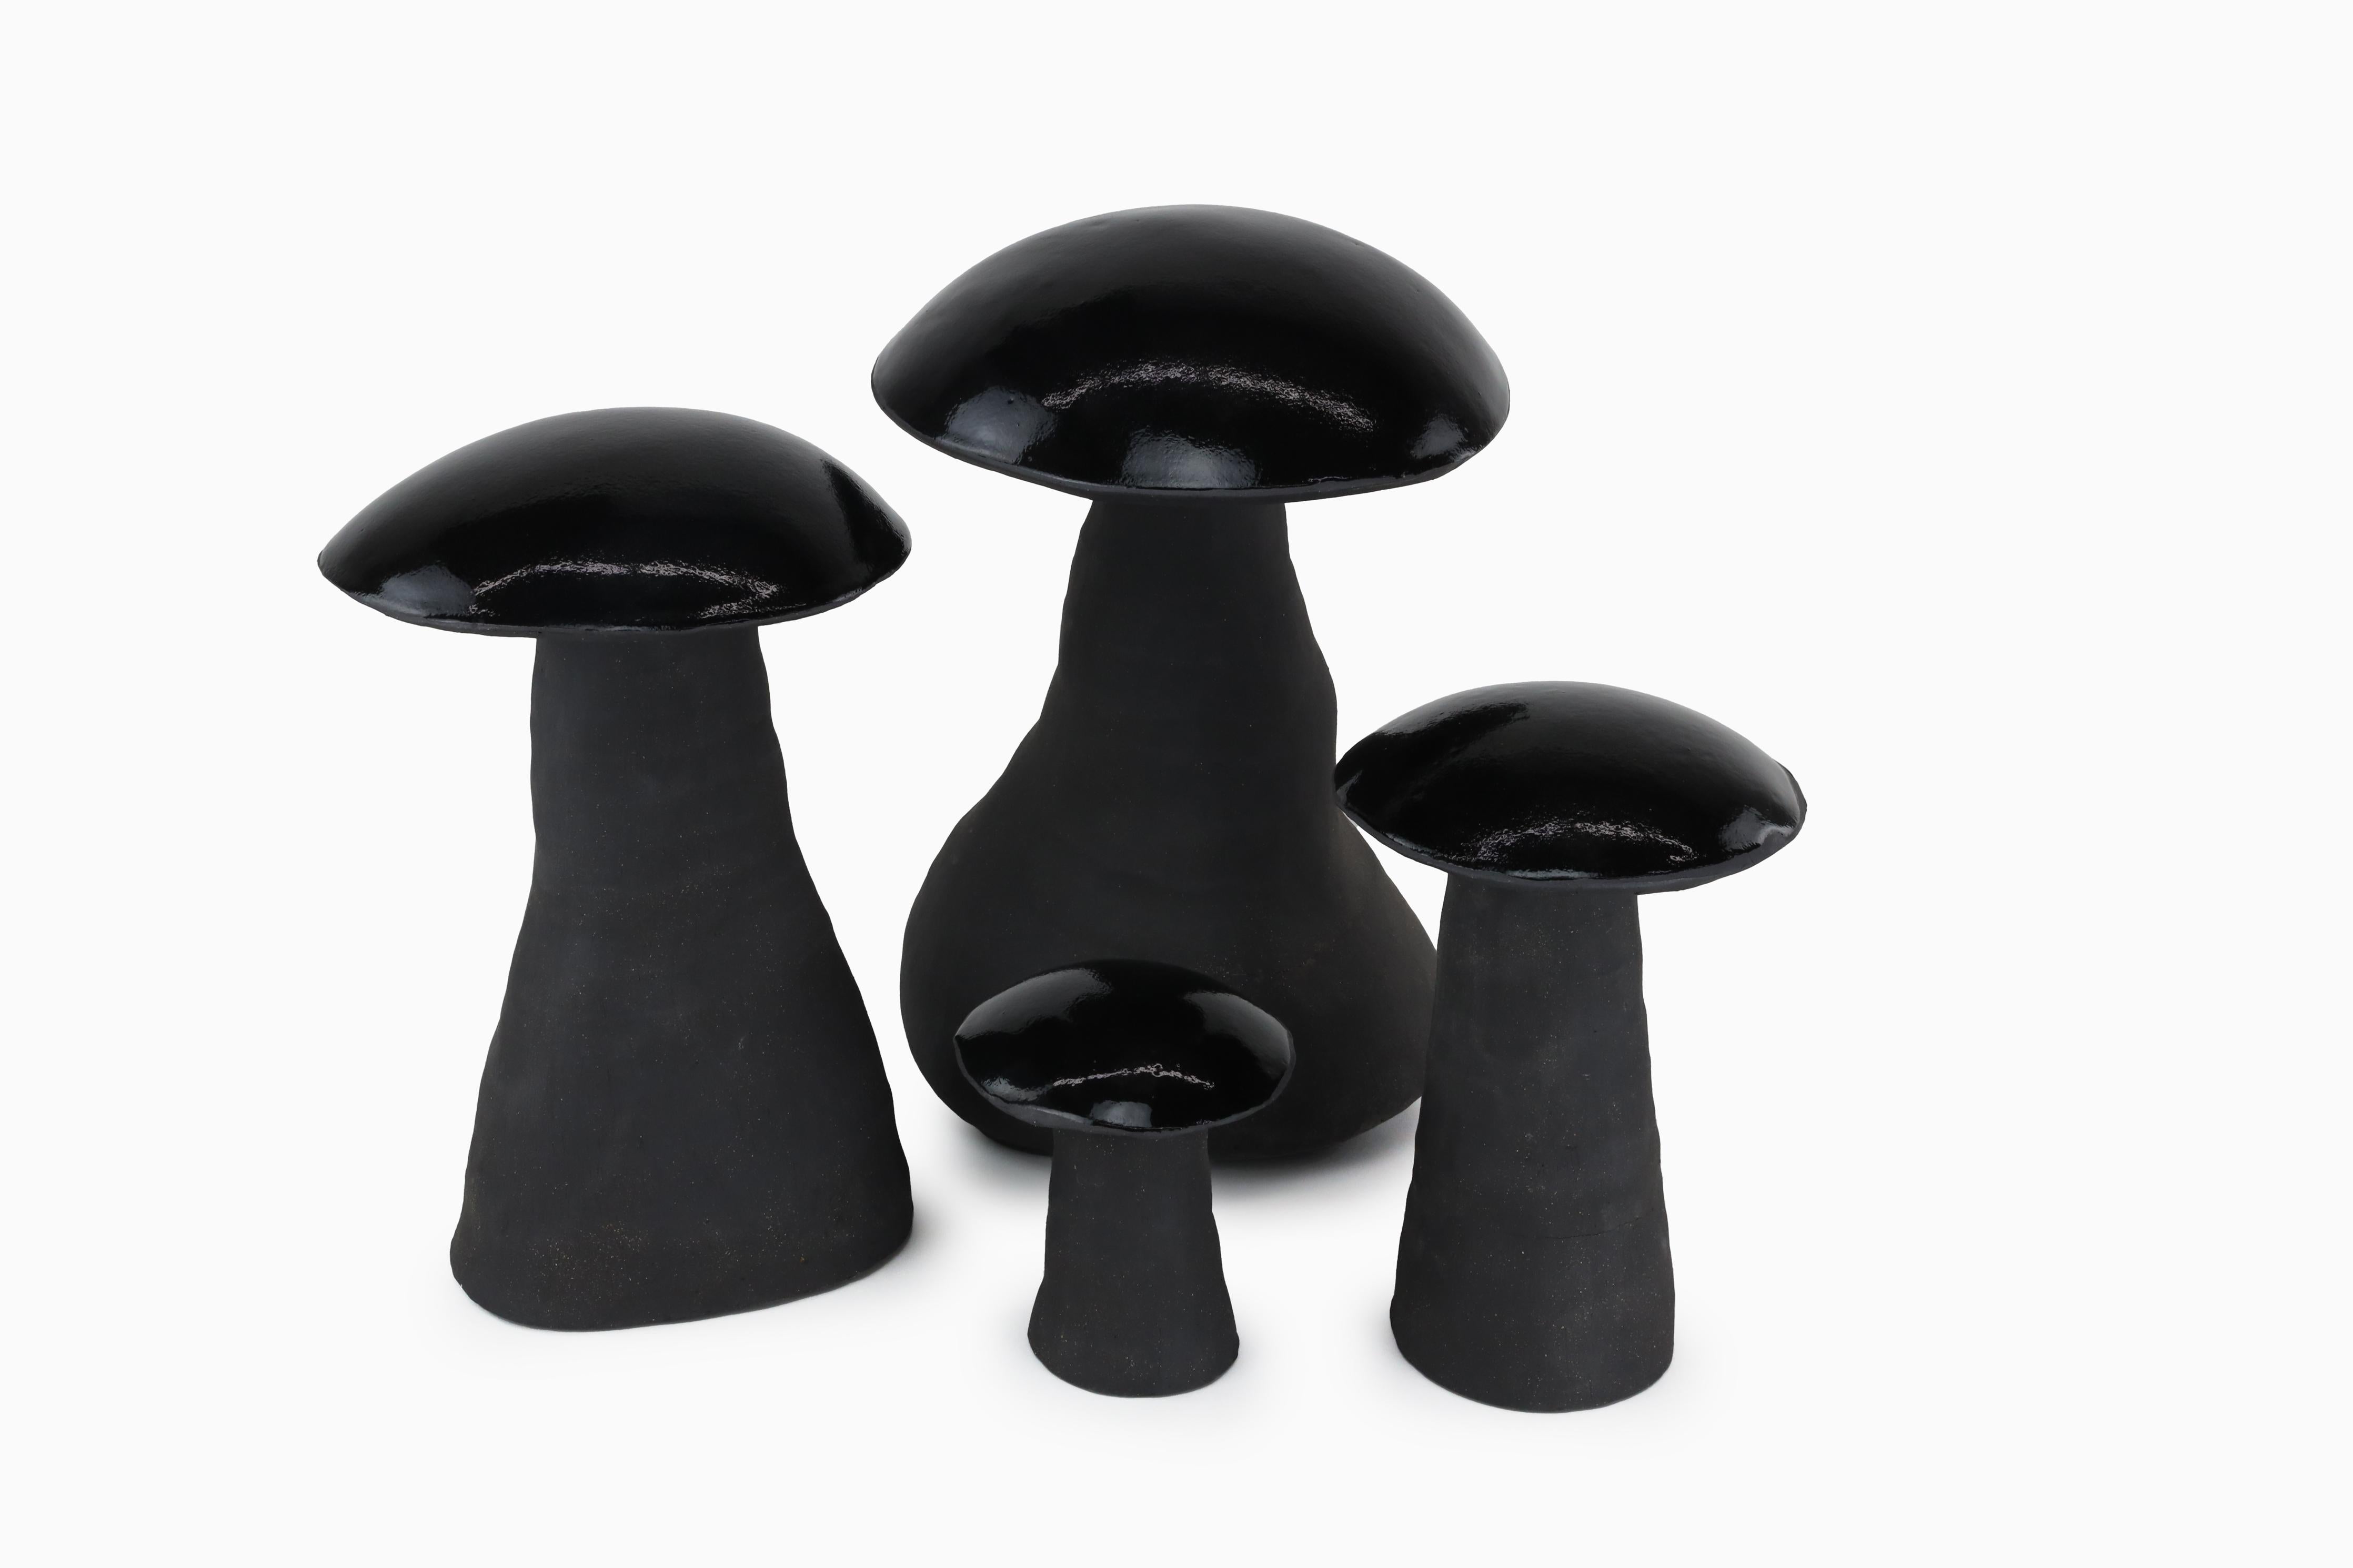 Les champignons magiques de minuit sont livrés par lot de quatre. Chaque champignon est fait à la main et unique. Vous recevrez un ensemble similaire à la photo, mais les tiges varieront en taille et en forme car elles sont uniques. Les champignons